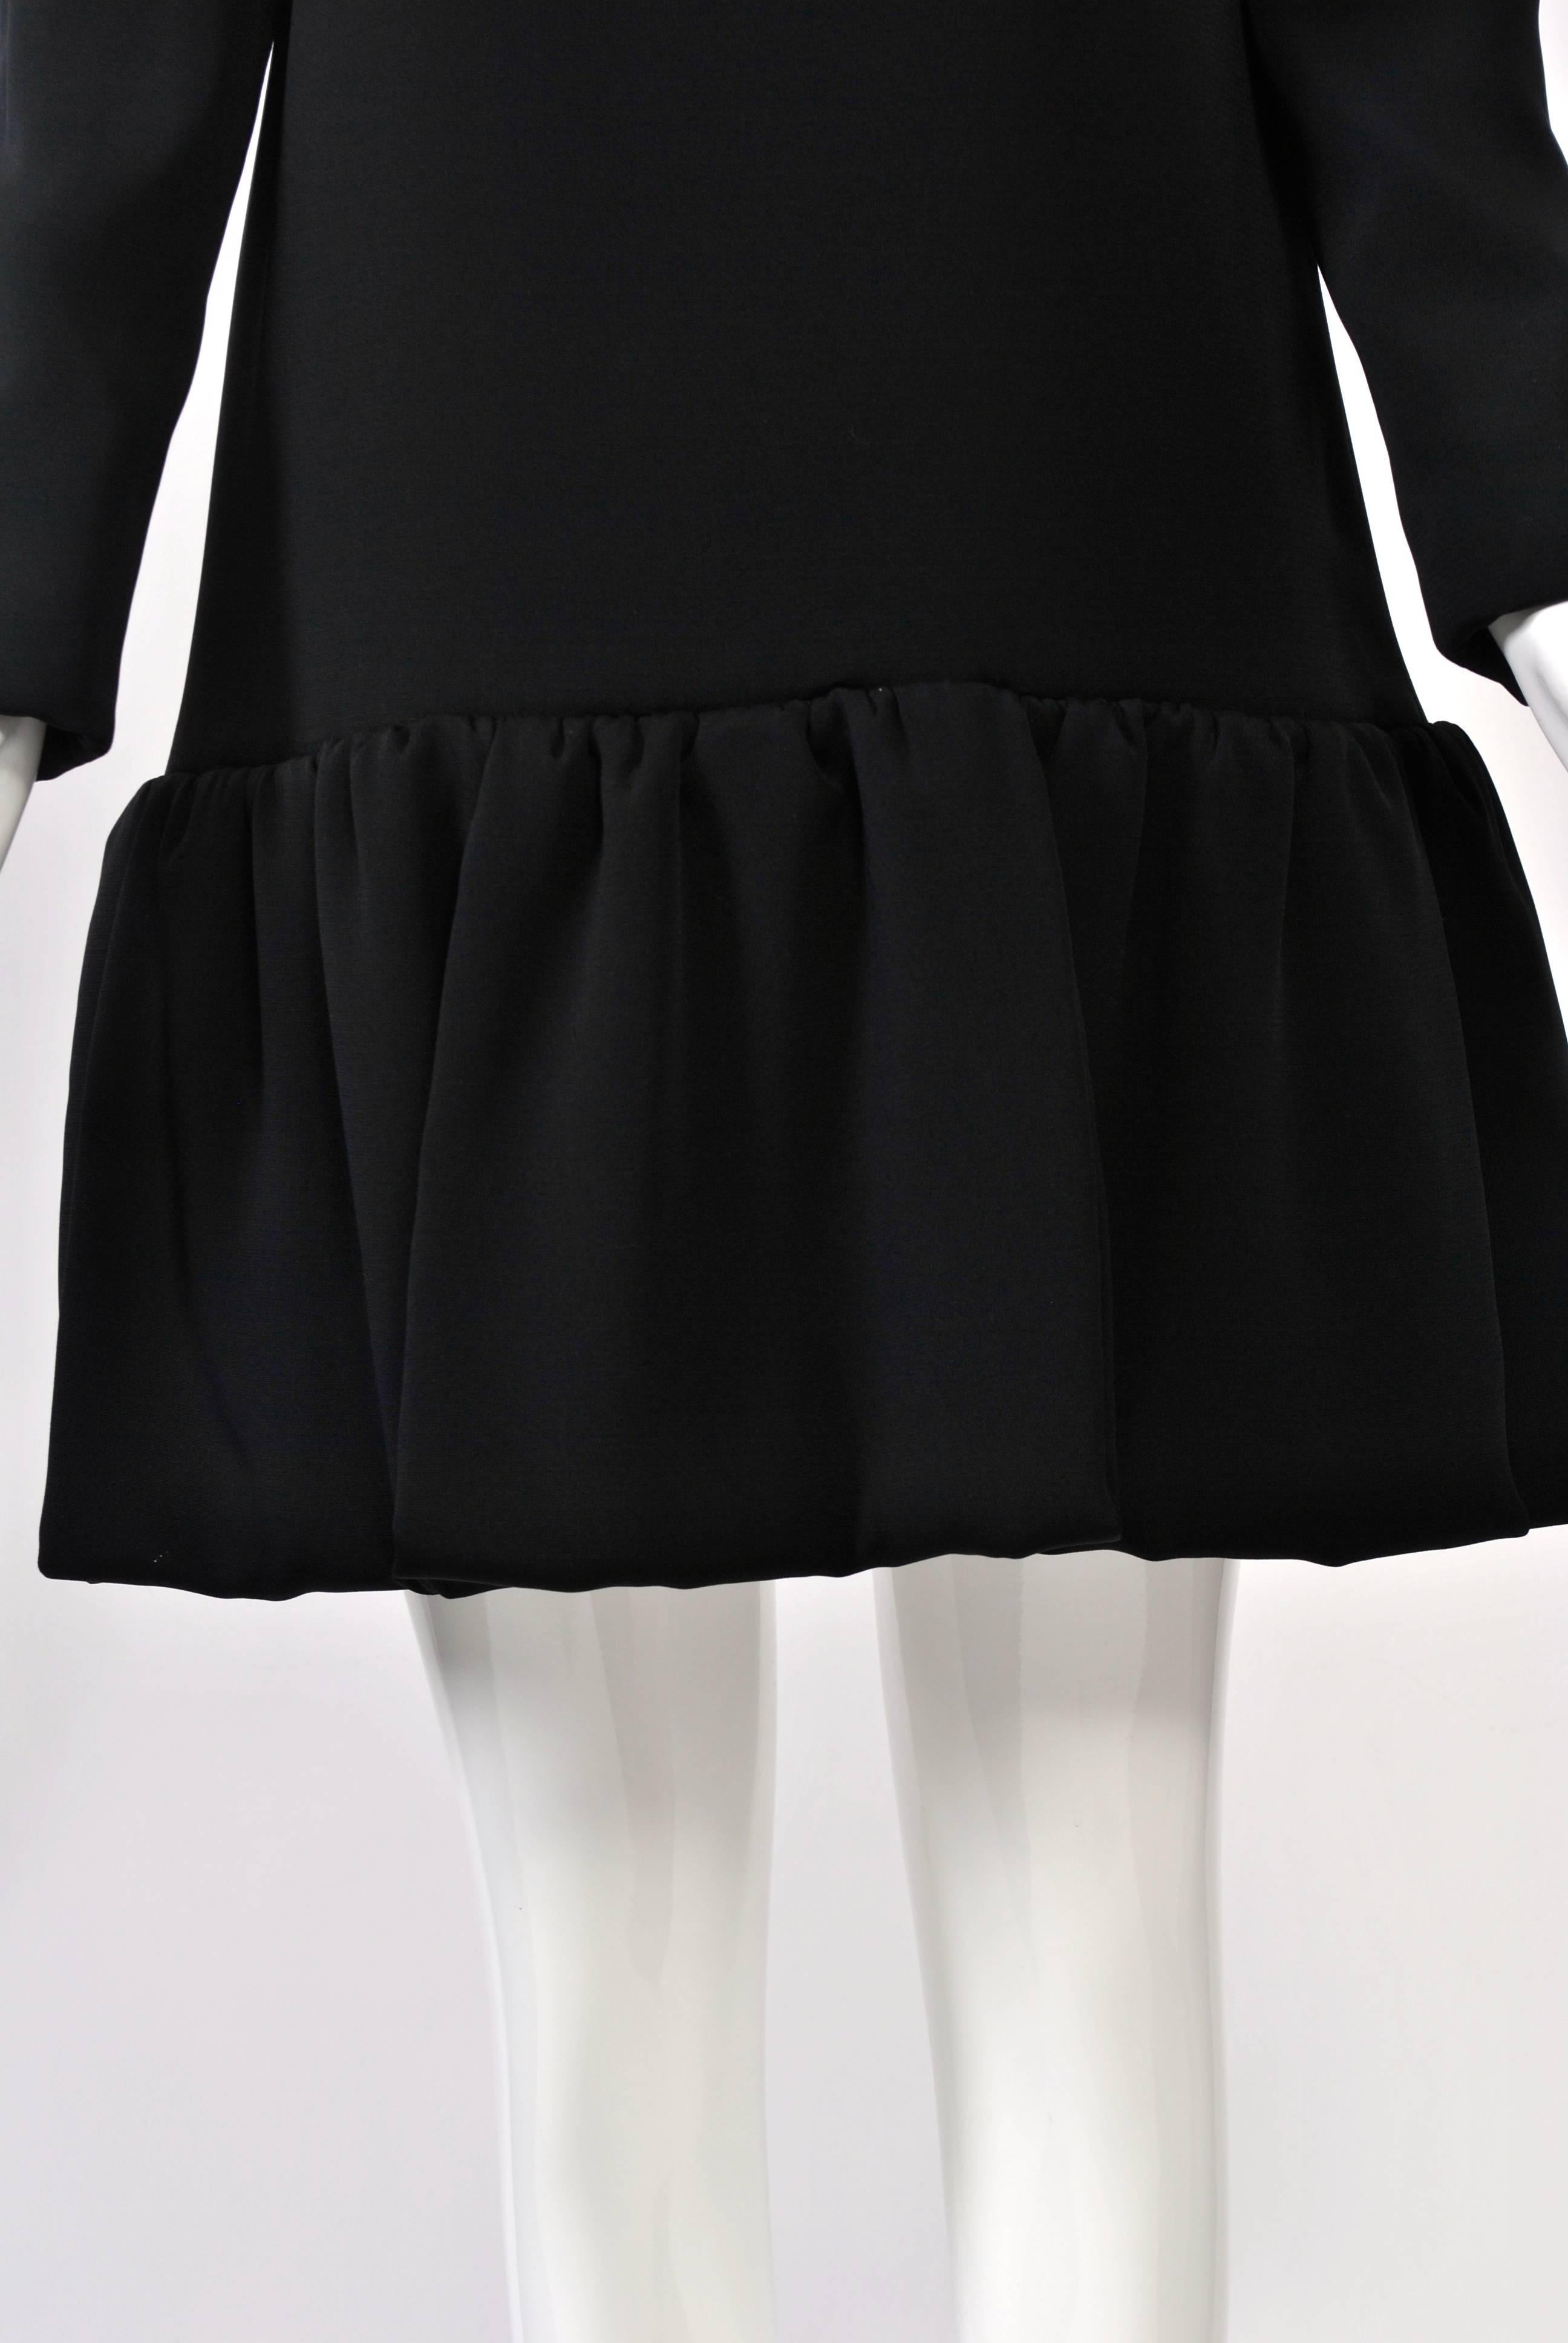 Pierre Cardin 1960s Black Dress 1